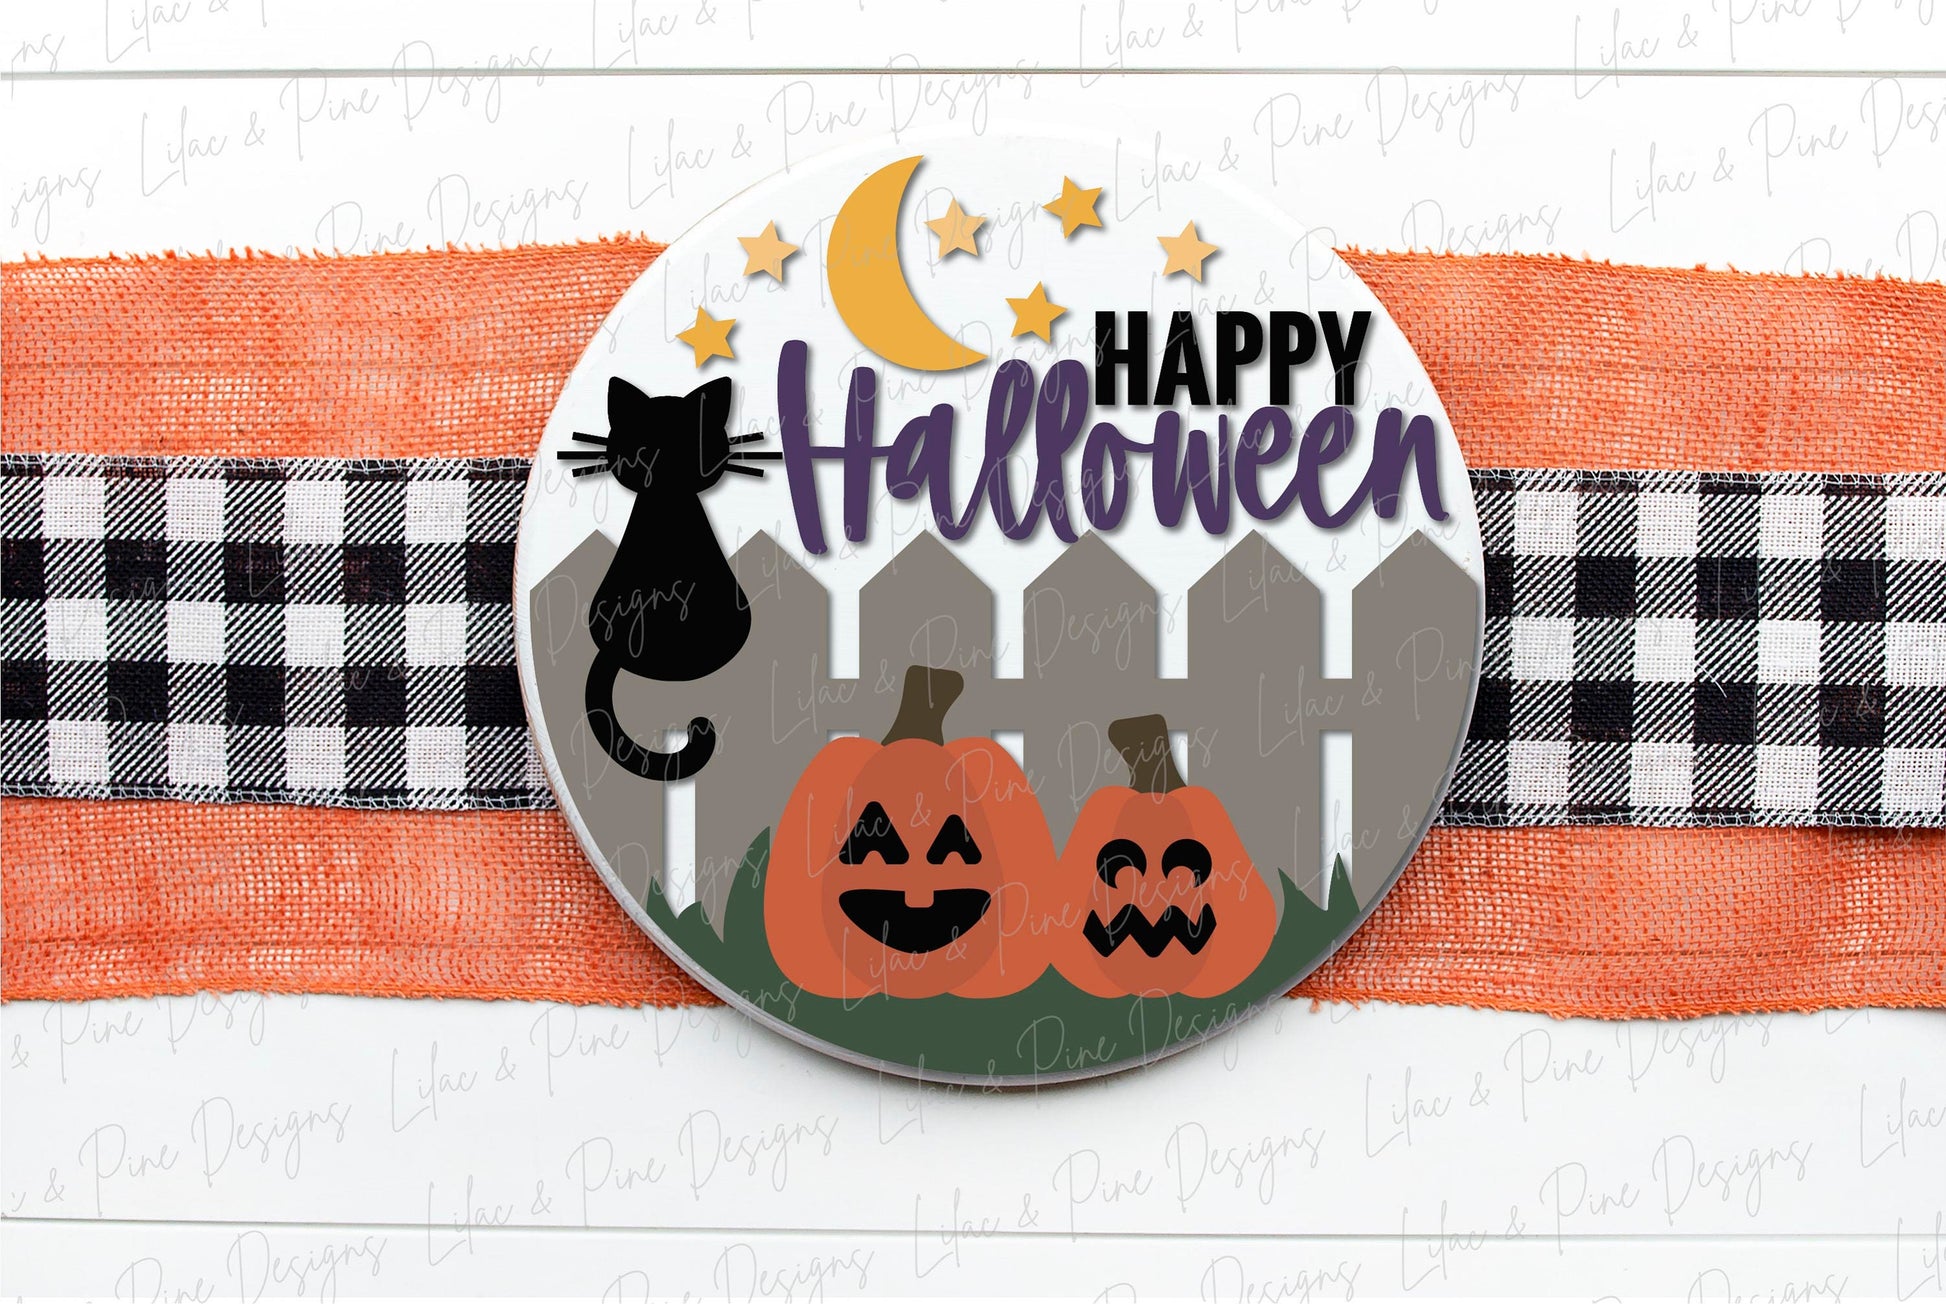 Halloween door hanger SVG, Black Cat door hanger, Pumpkin welcome sign SVG, Halloween welcome sign, Halloween decor, Glowforge laser SVG